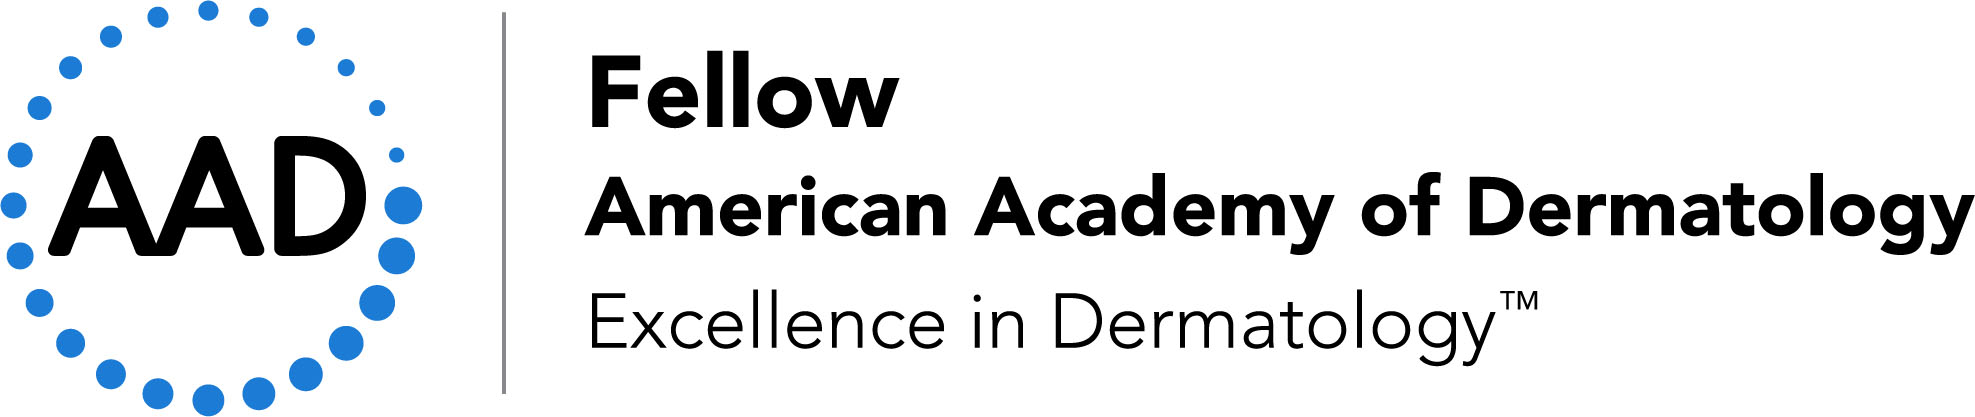 AAD Fellow logo